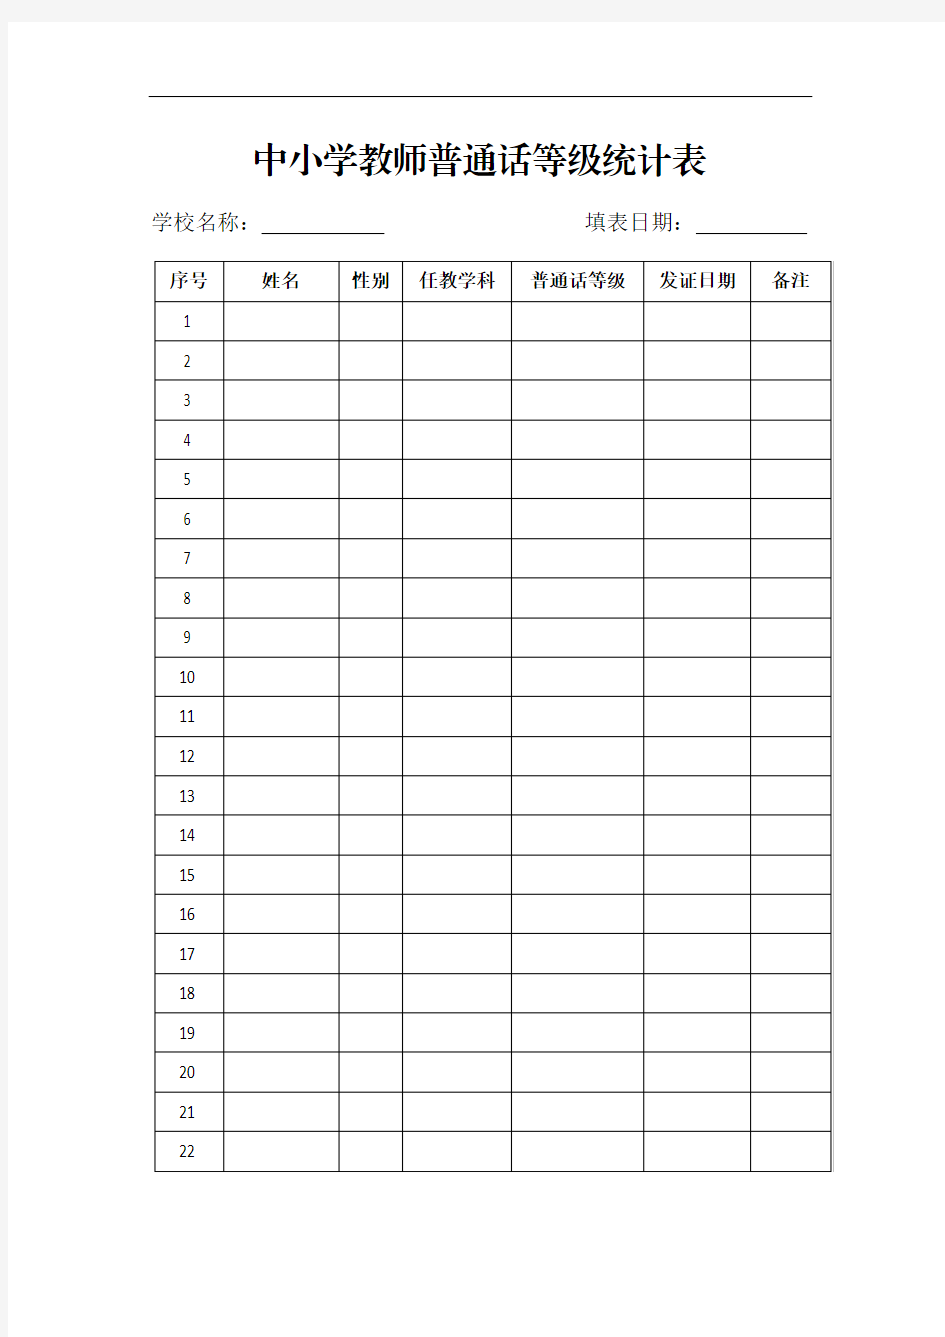 中小学教师普通话等级统计表